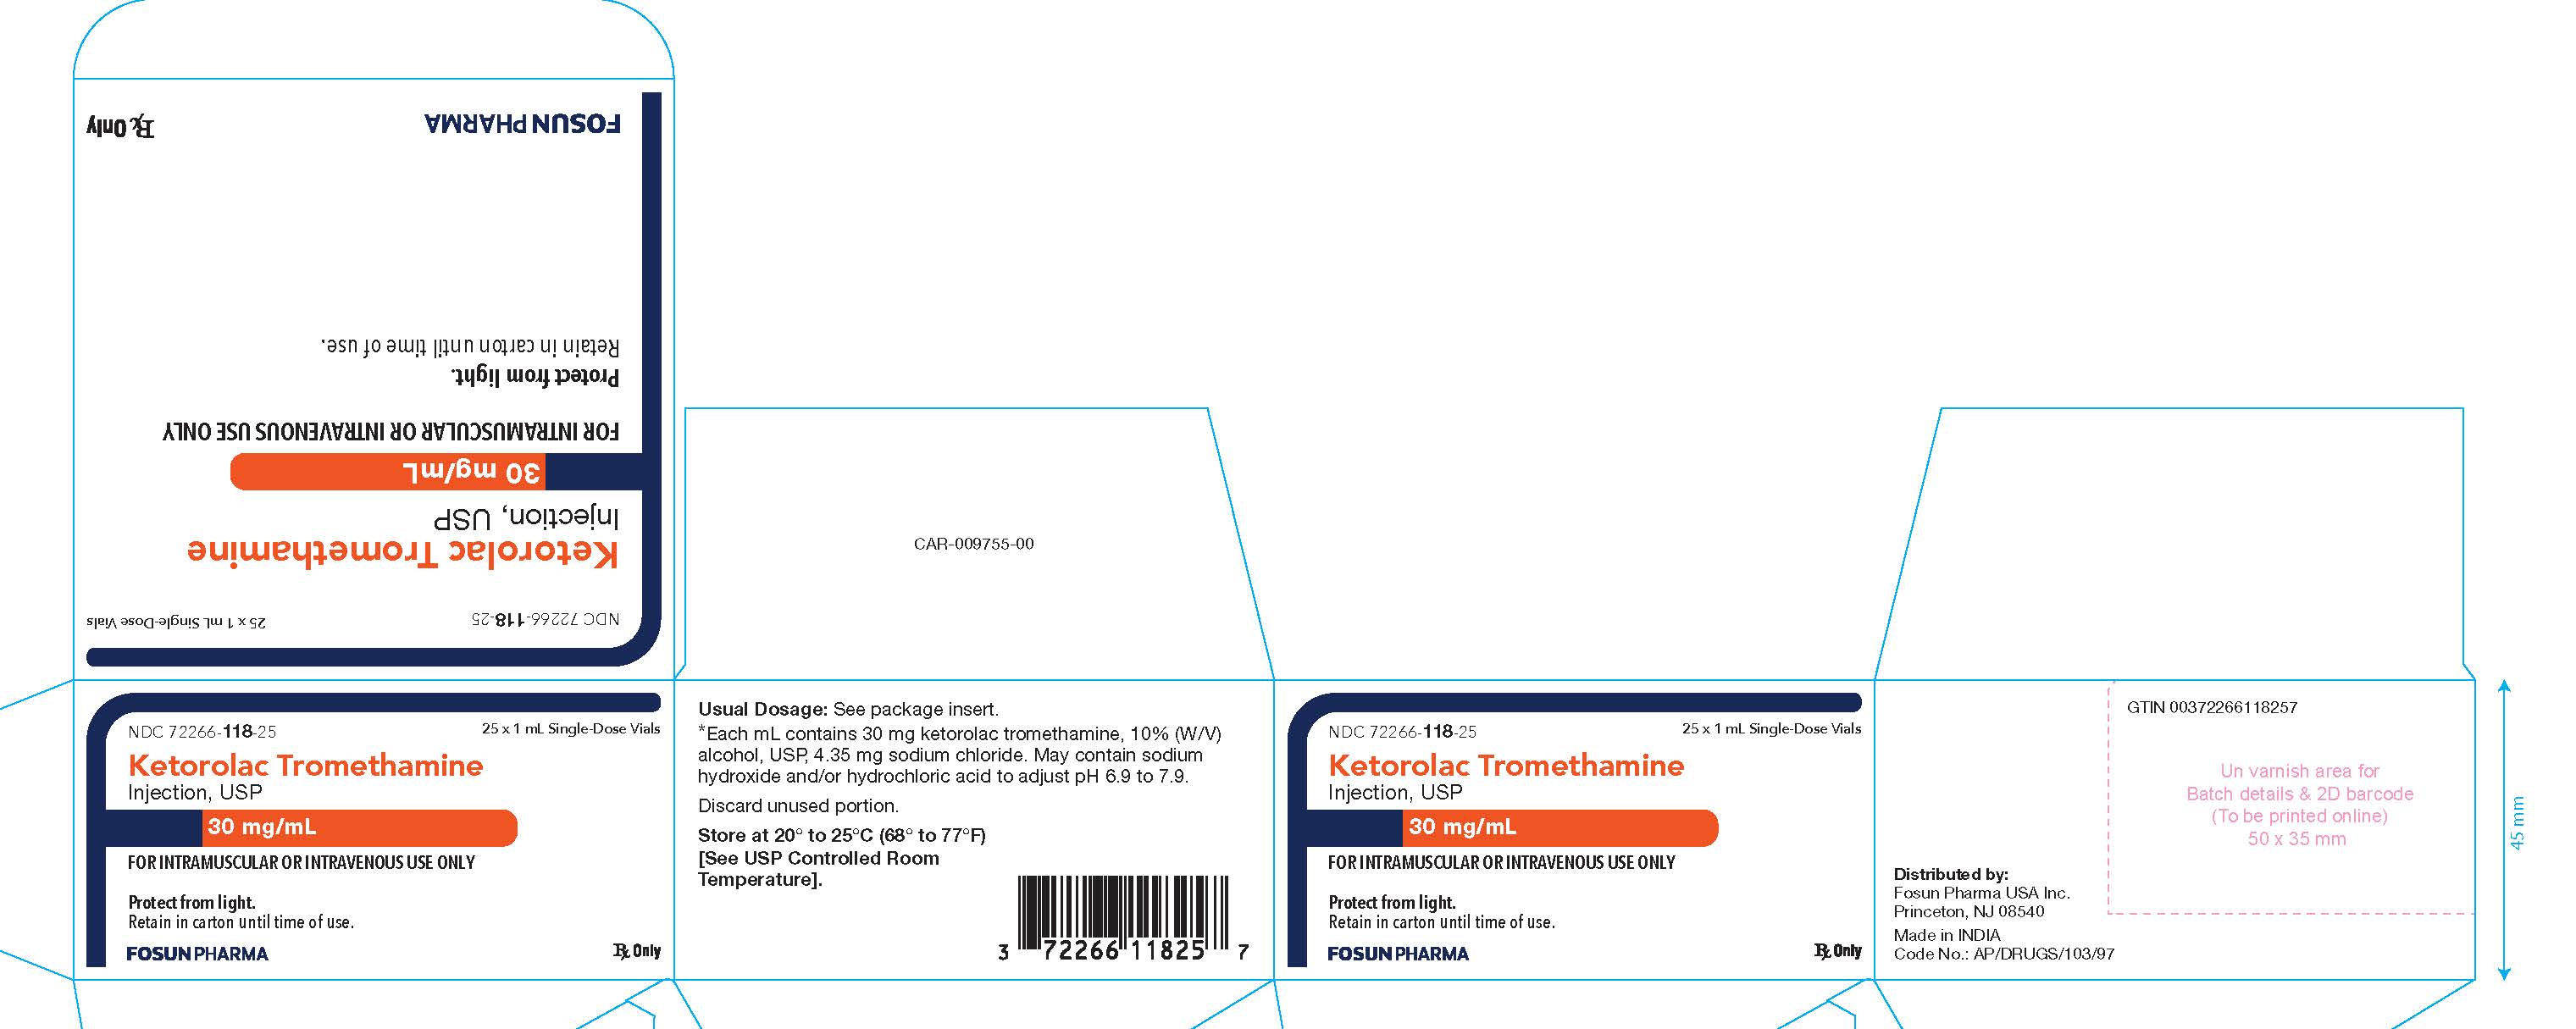 Ketorolac Carton Label 30 mg/mL